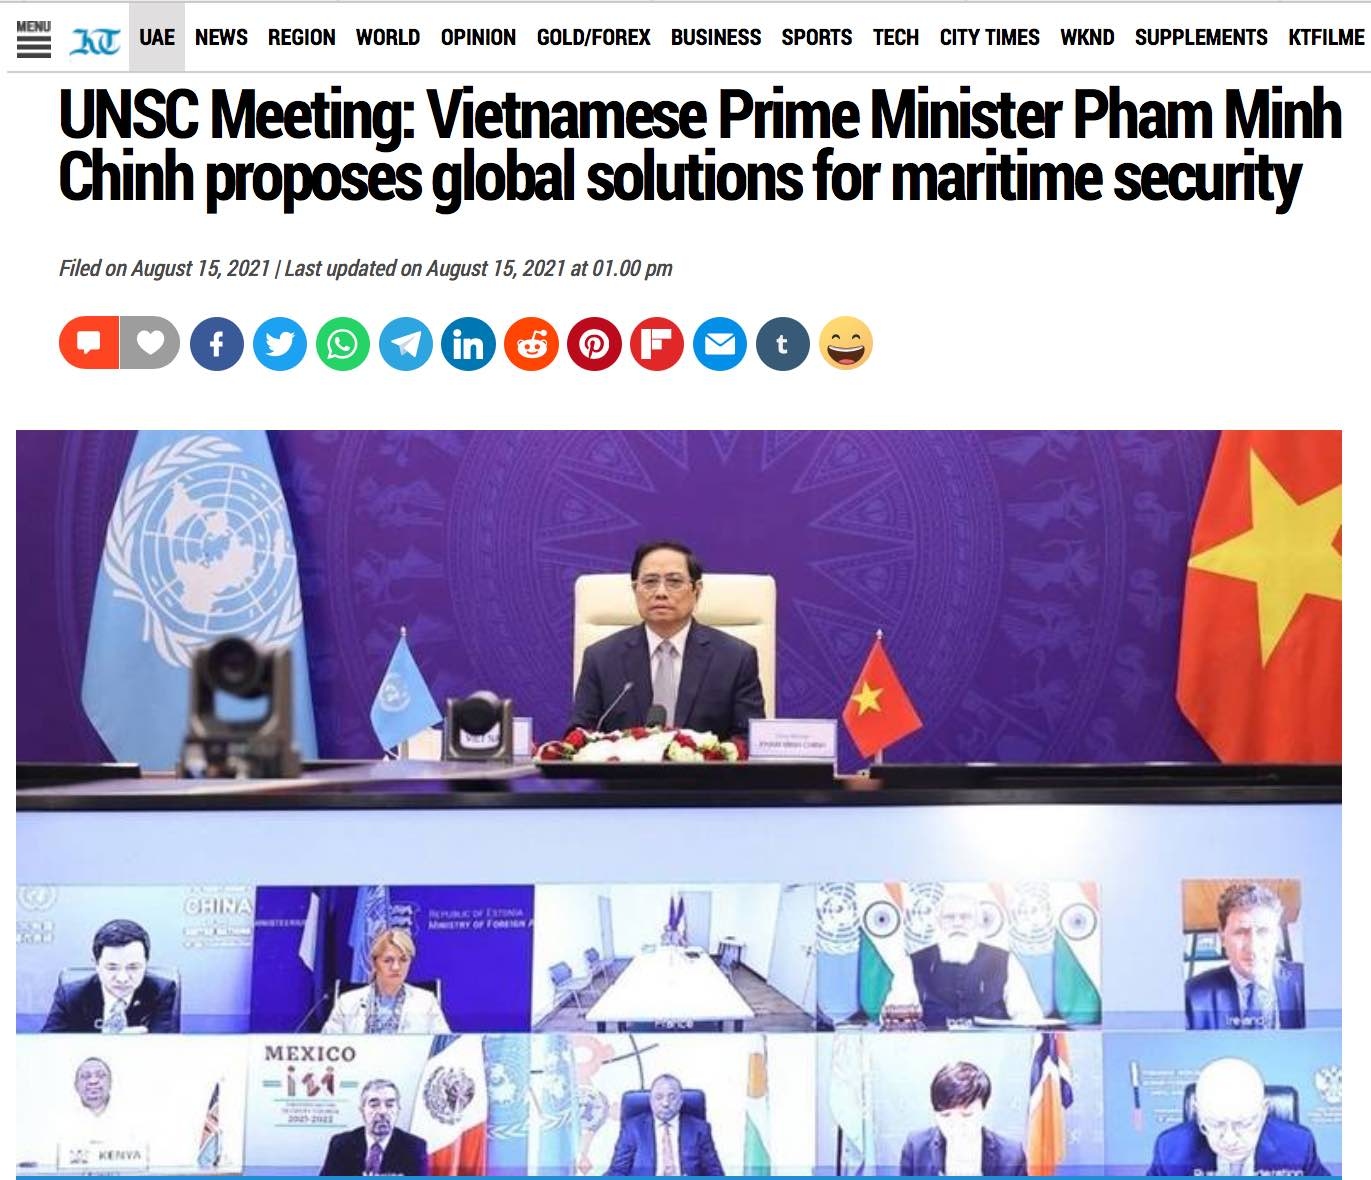 Truyền thông UAE đề cao giải pháp toàn cầu của Việt Nam trong vấn đề an ninh hàng hải